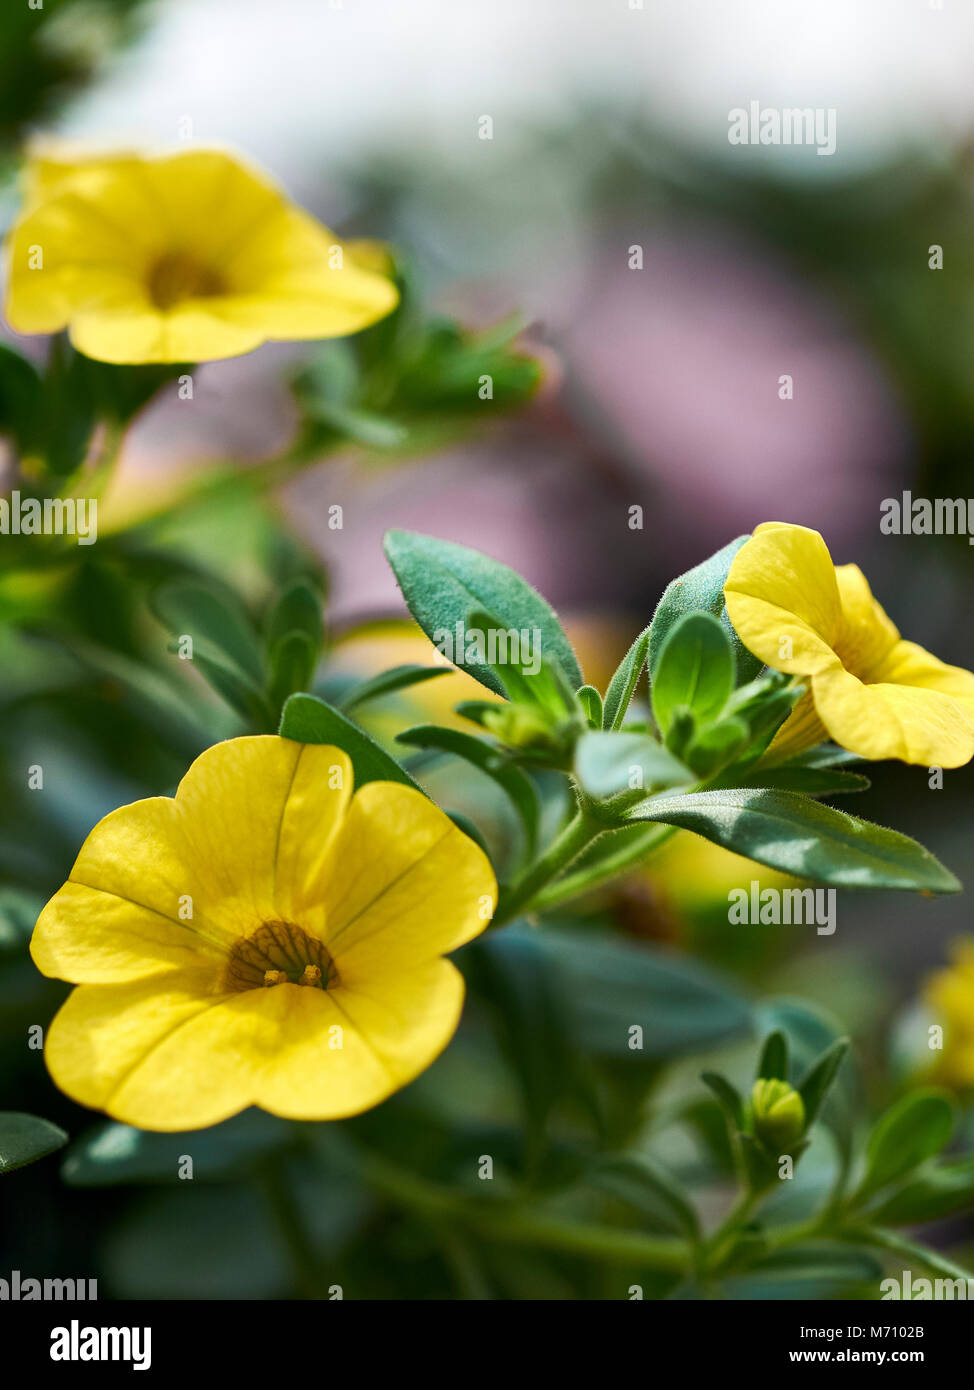 Nahaufnahme des Gelben petunia Blumen in voller Blüte, auch als Solanaceae bekannt. Stockfoto